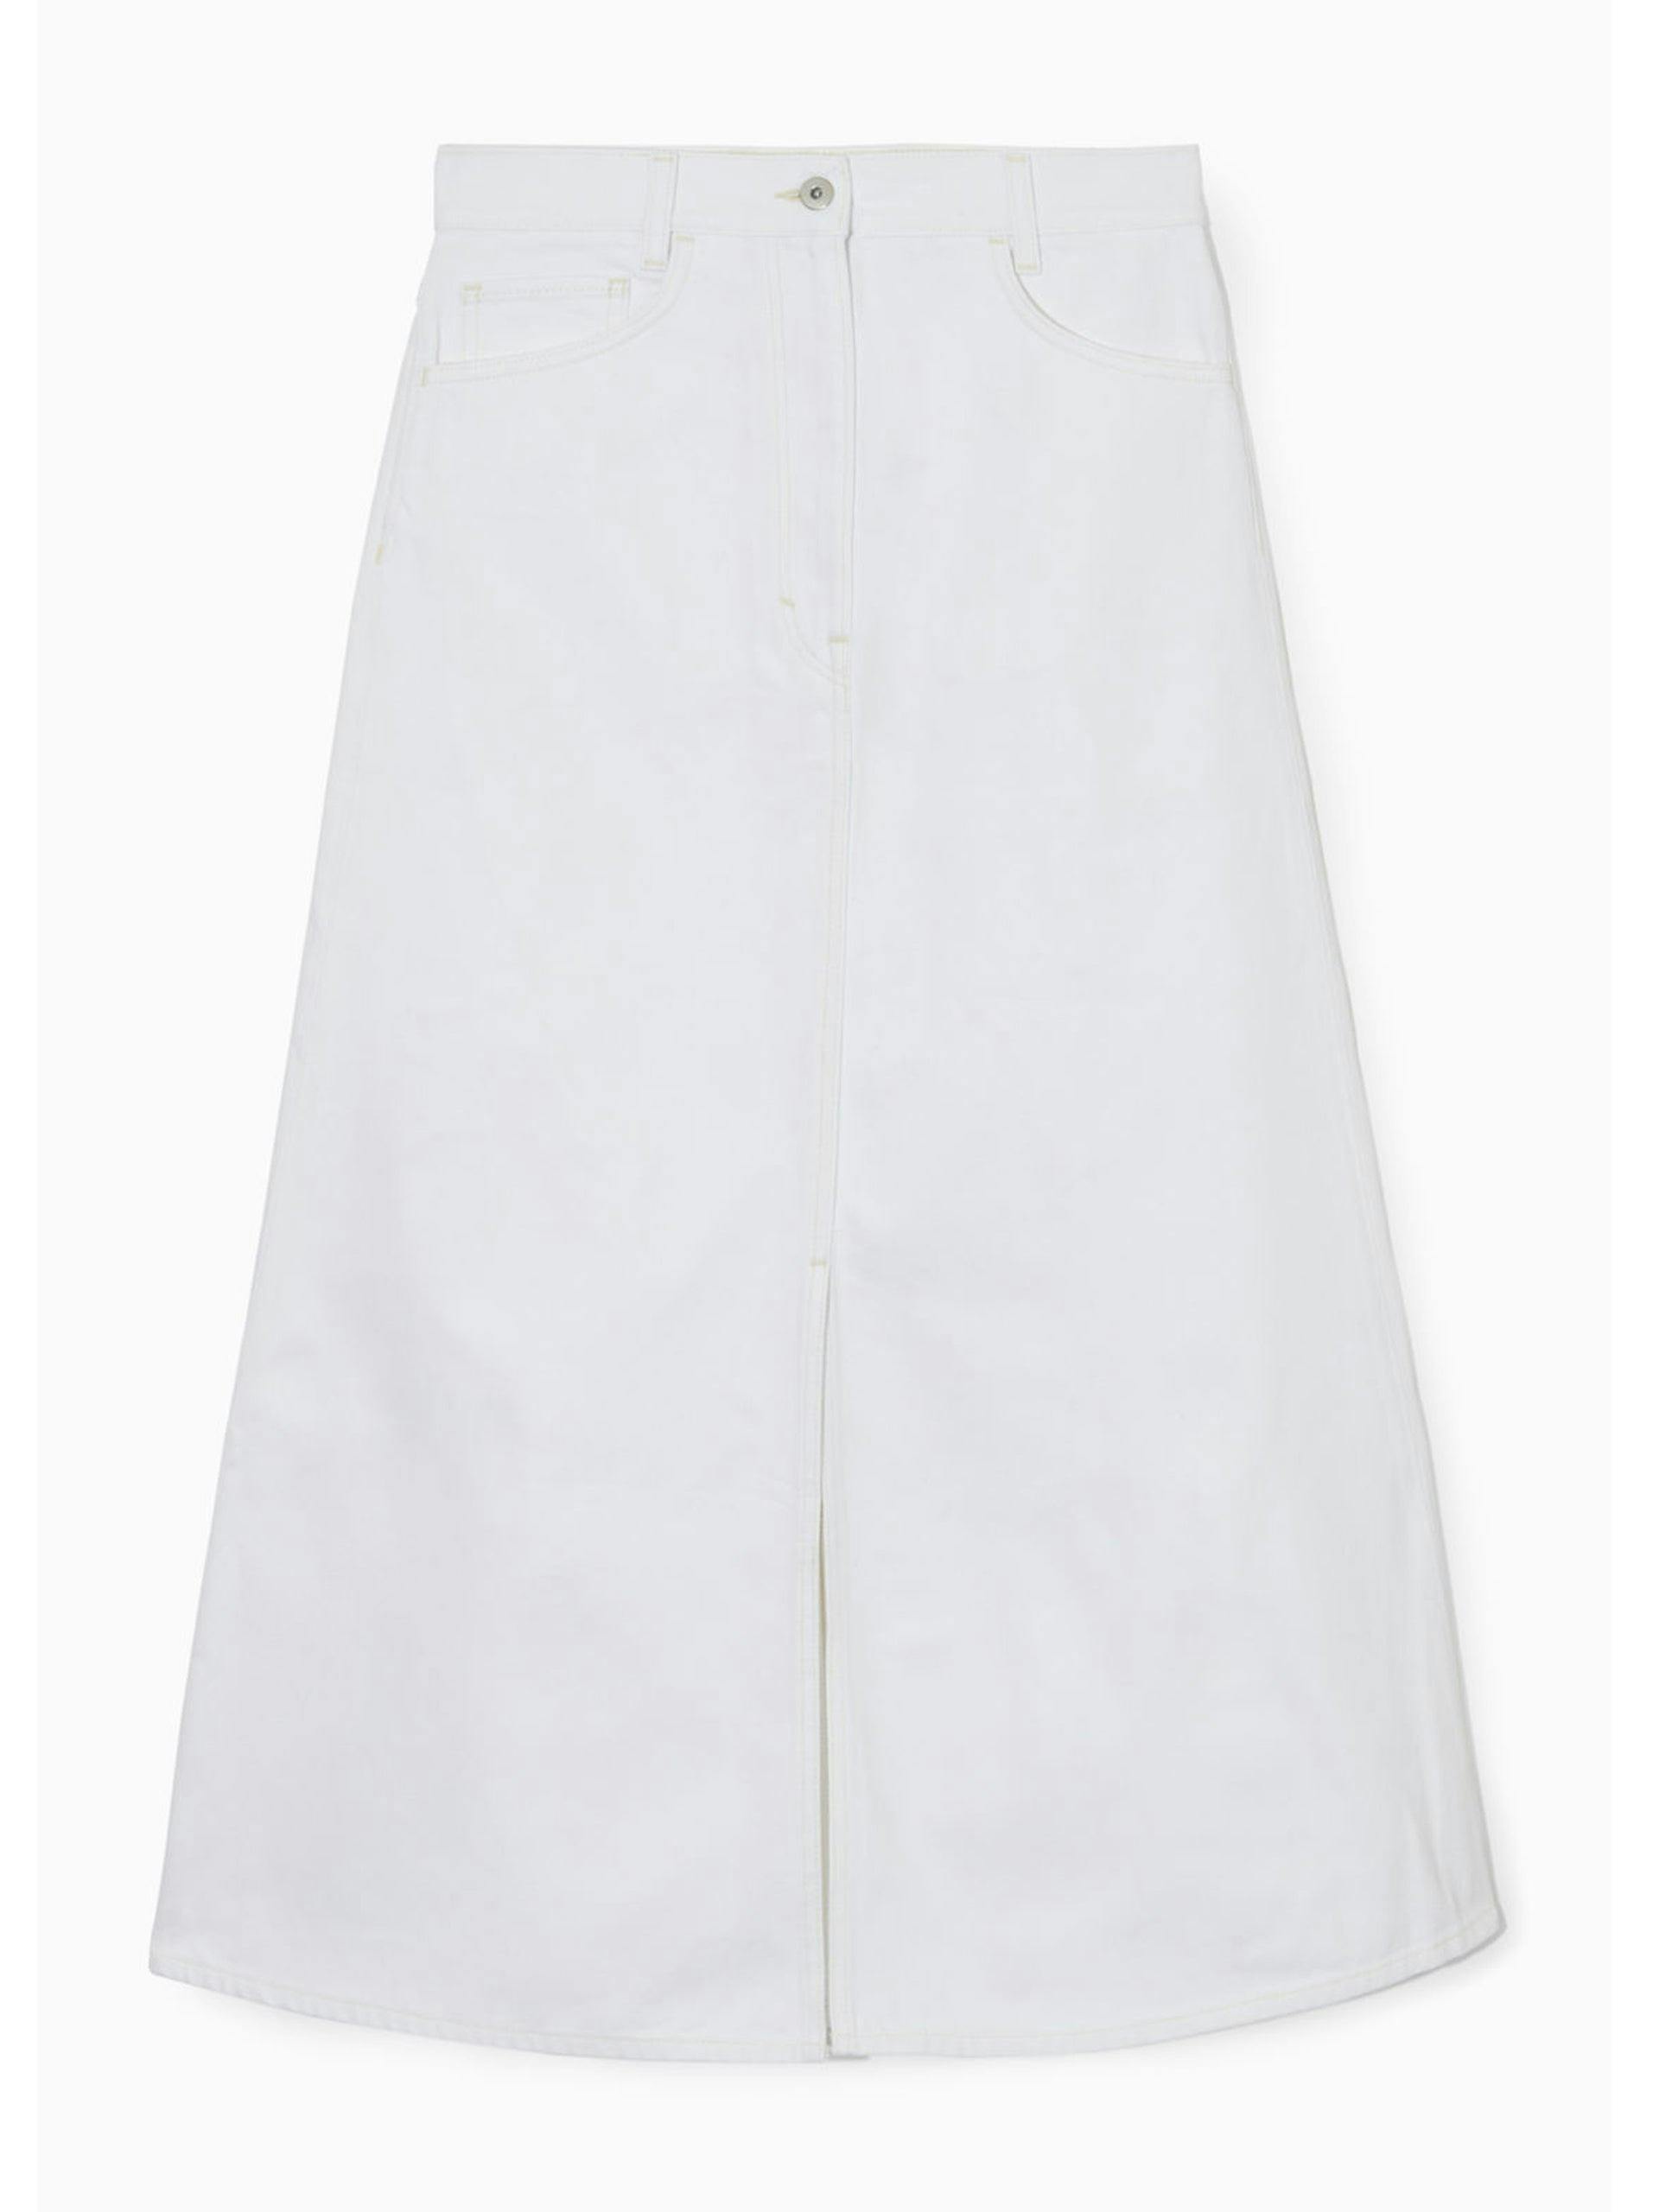 White A-line denim midi skirt